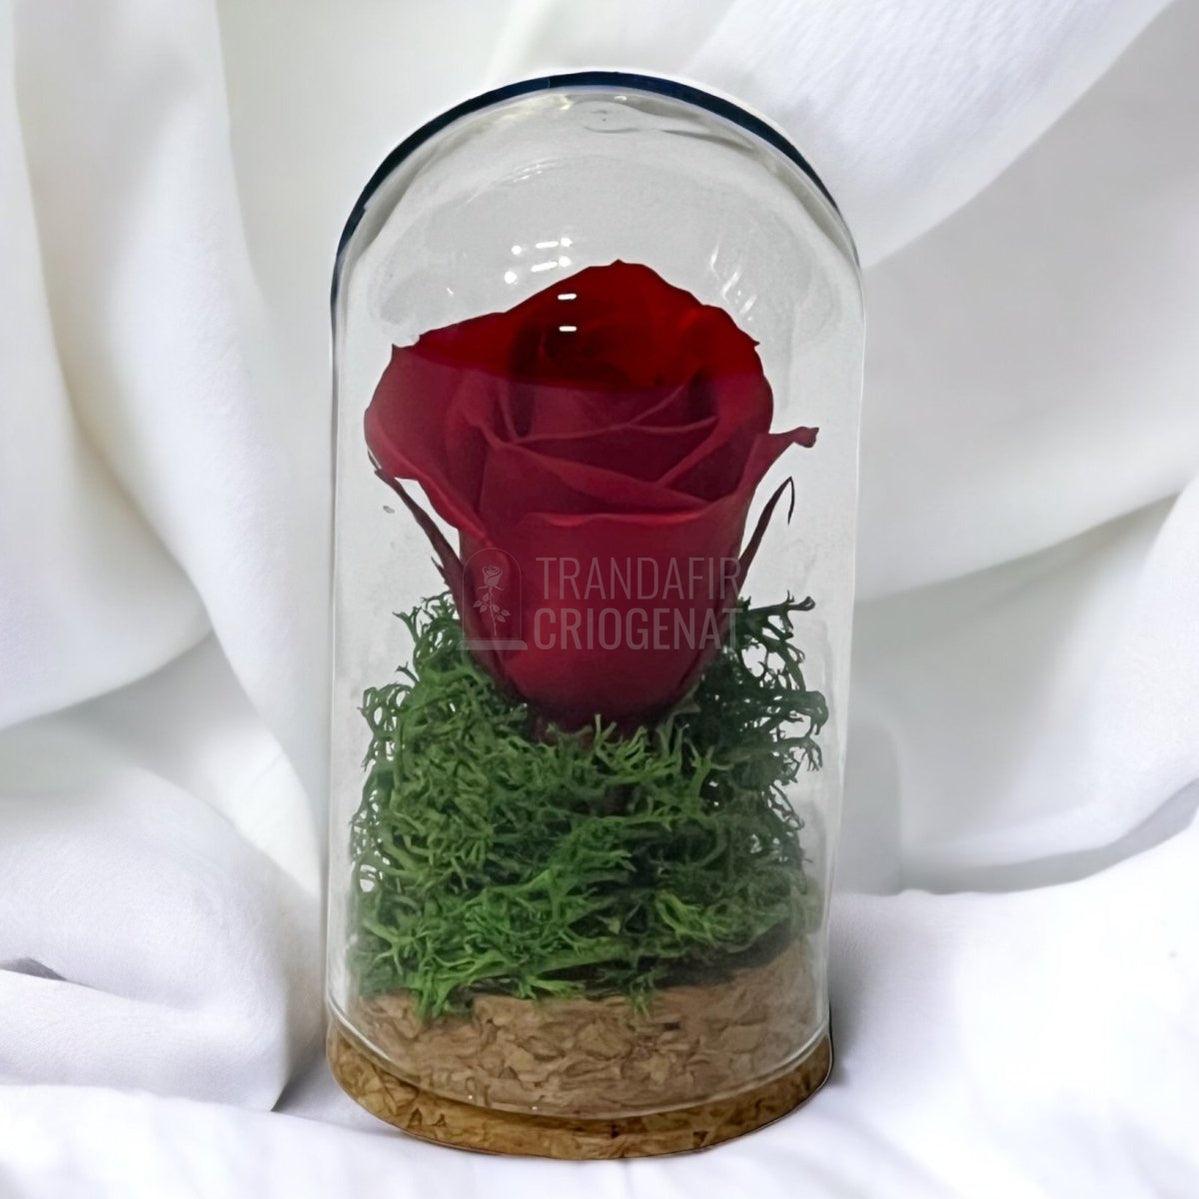 Trandafir Criogenat rosu in cupola sticla 5x9,5cm (marturie) - Trandafir-Criogenat.ro